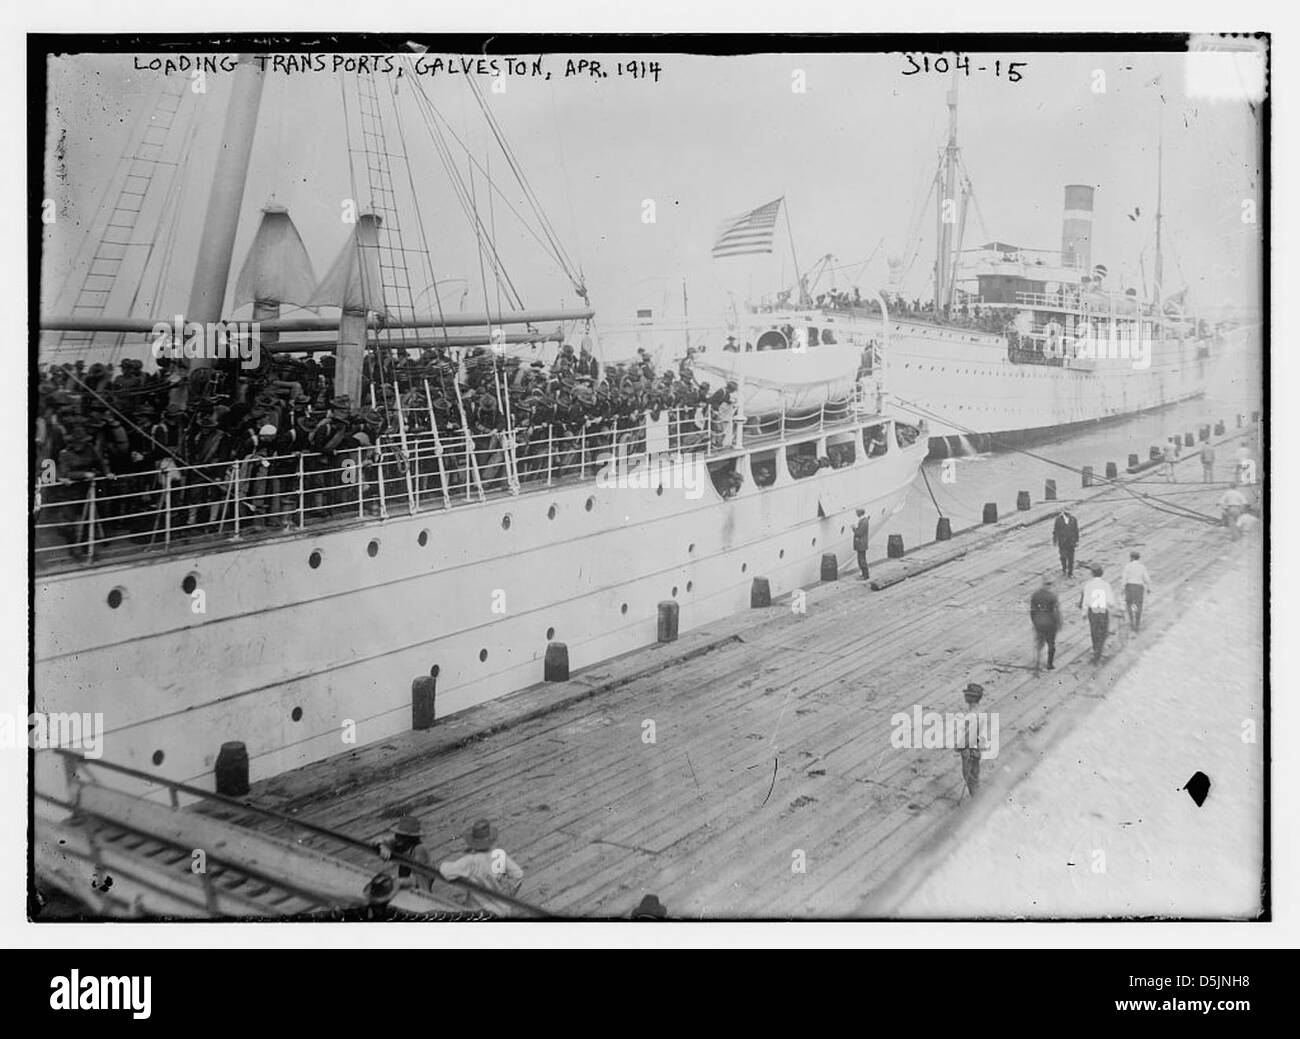 Trasporti di carico, Galveston, Apr. 1914 (LOC) Foto Stock